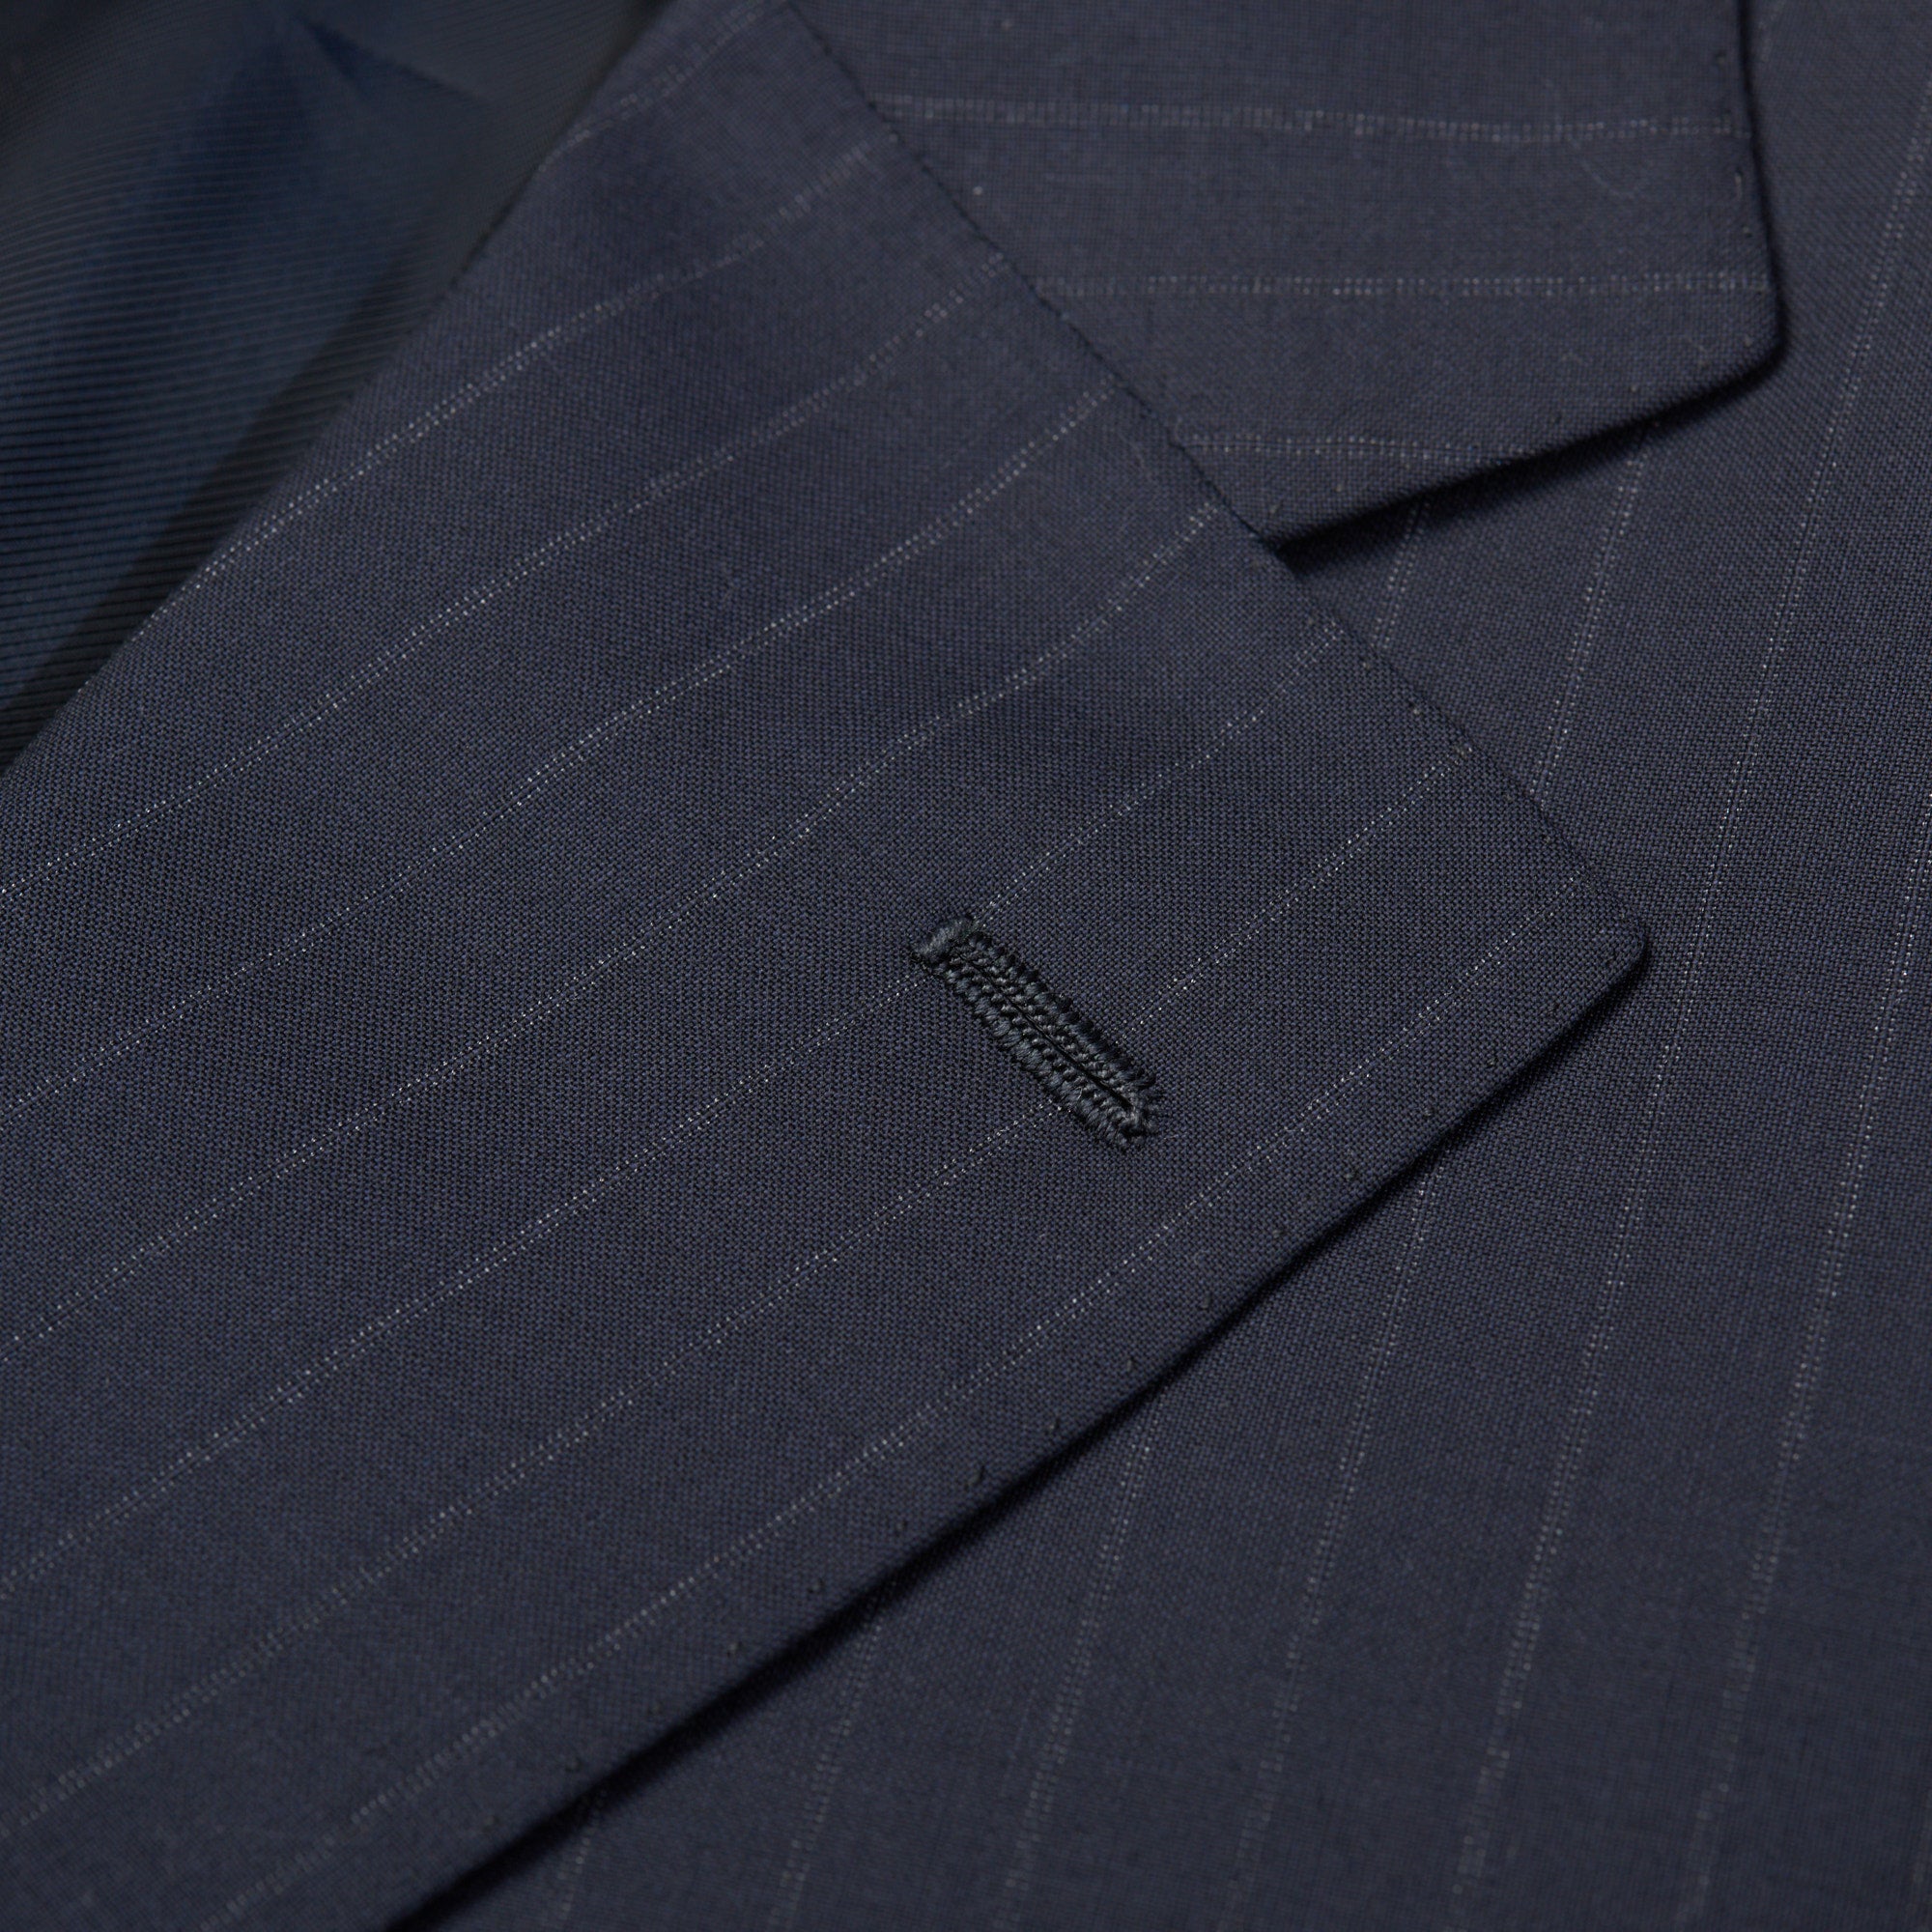 CESARE ATTOLINI Napoli Handmade Gray Wool Super 130's Suit 52 NEW US 42 CESARE ATTOLINI